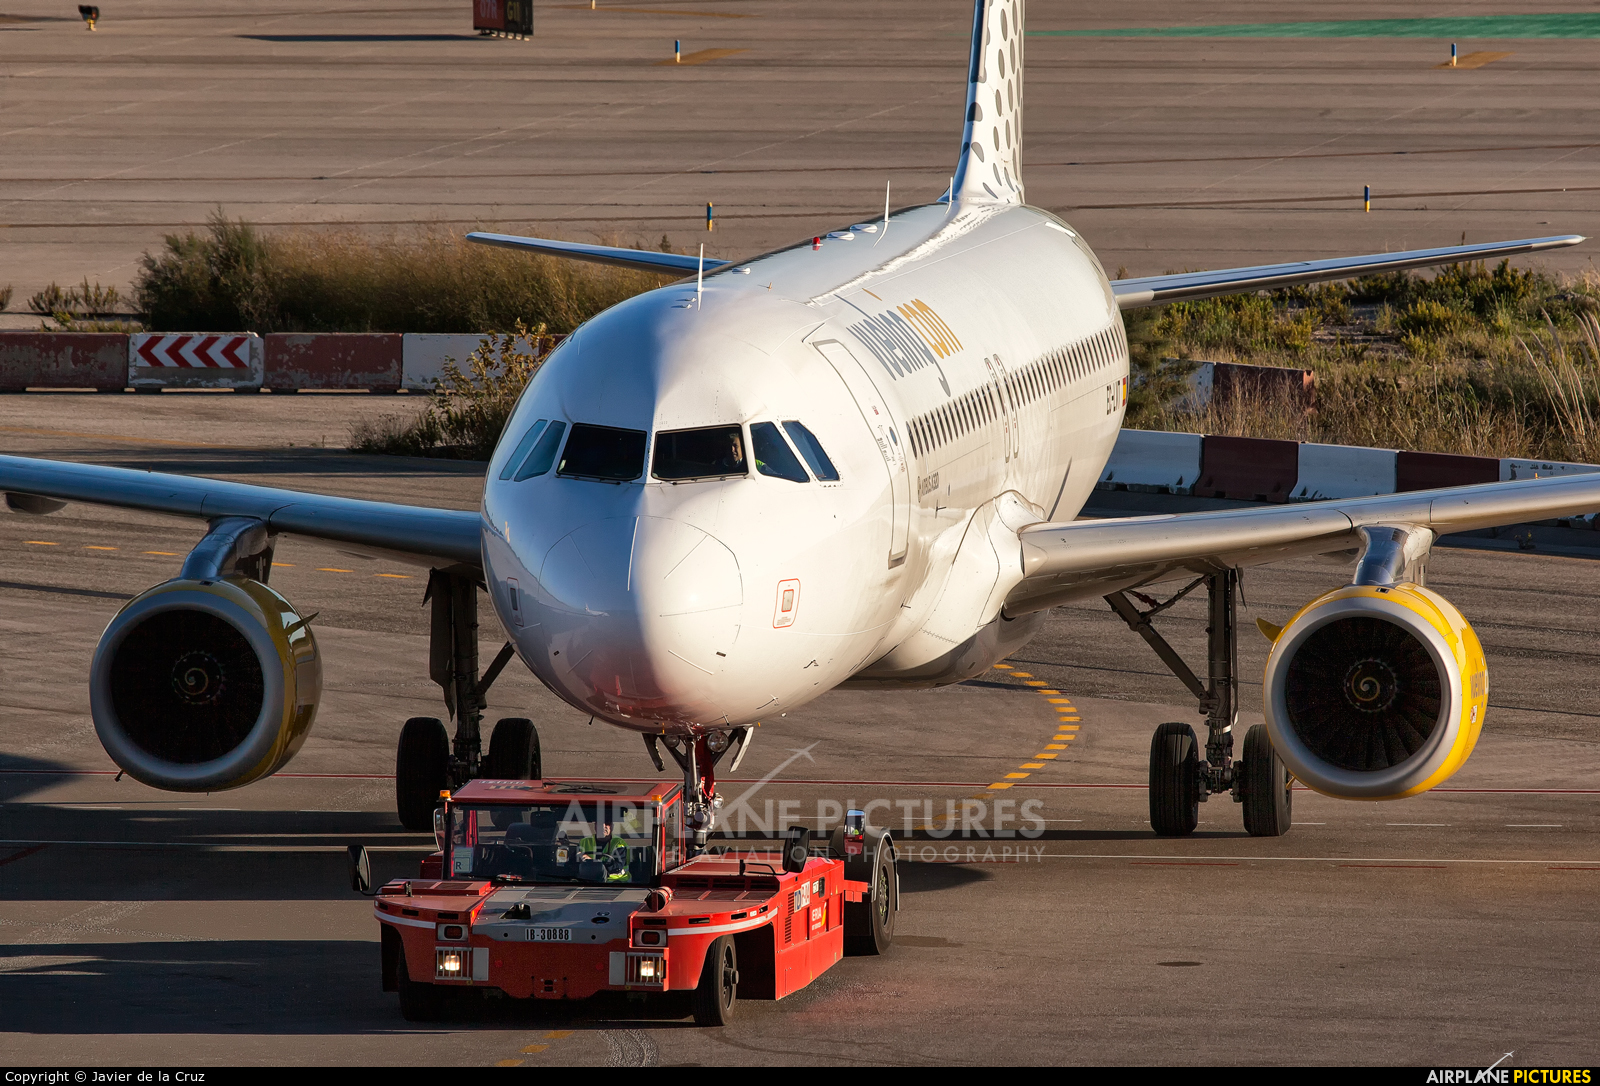 Vueling Airlines EC-LVT aircraft at Barcelona - El Prat